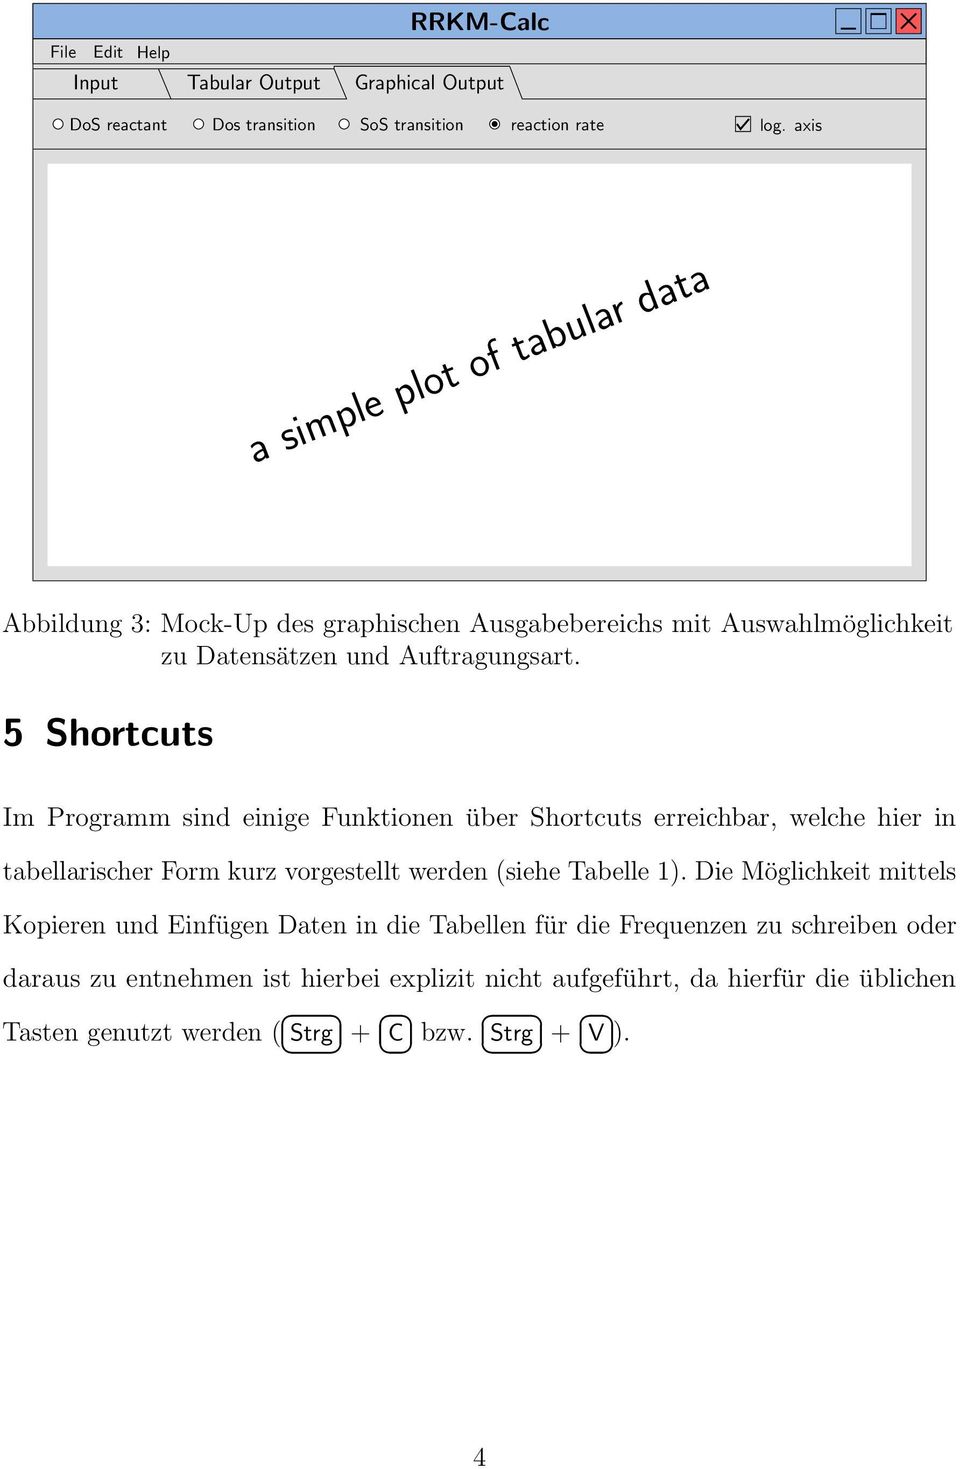 5 Shortcuts Im Programm sind einige Funktionen über Shortcuts erreichbar, welche hier in tabellarischer Form kurz vorgestellt werden (siehe Tabelle